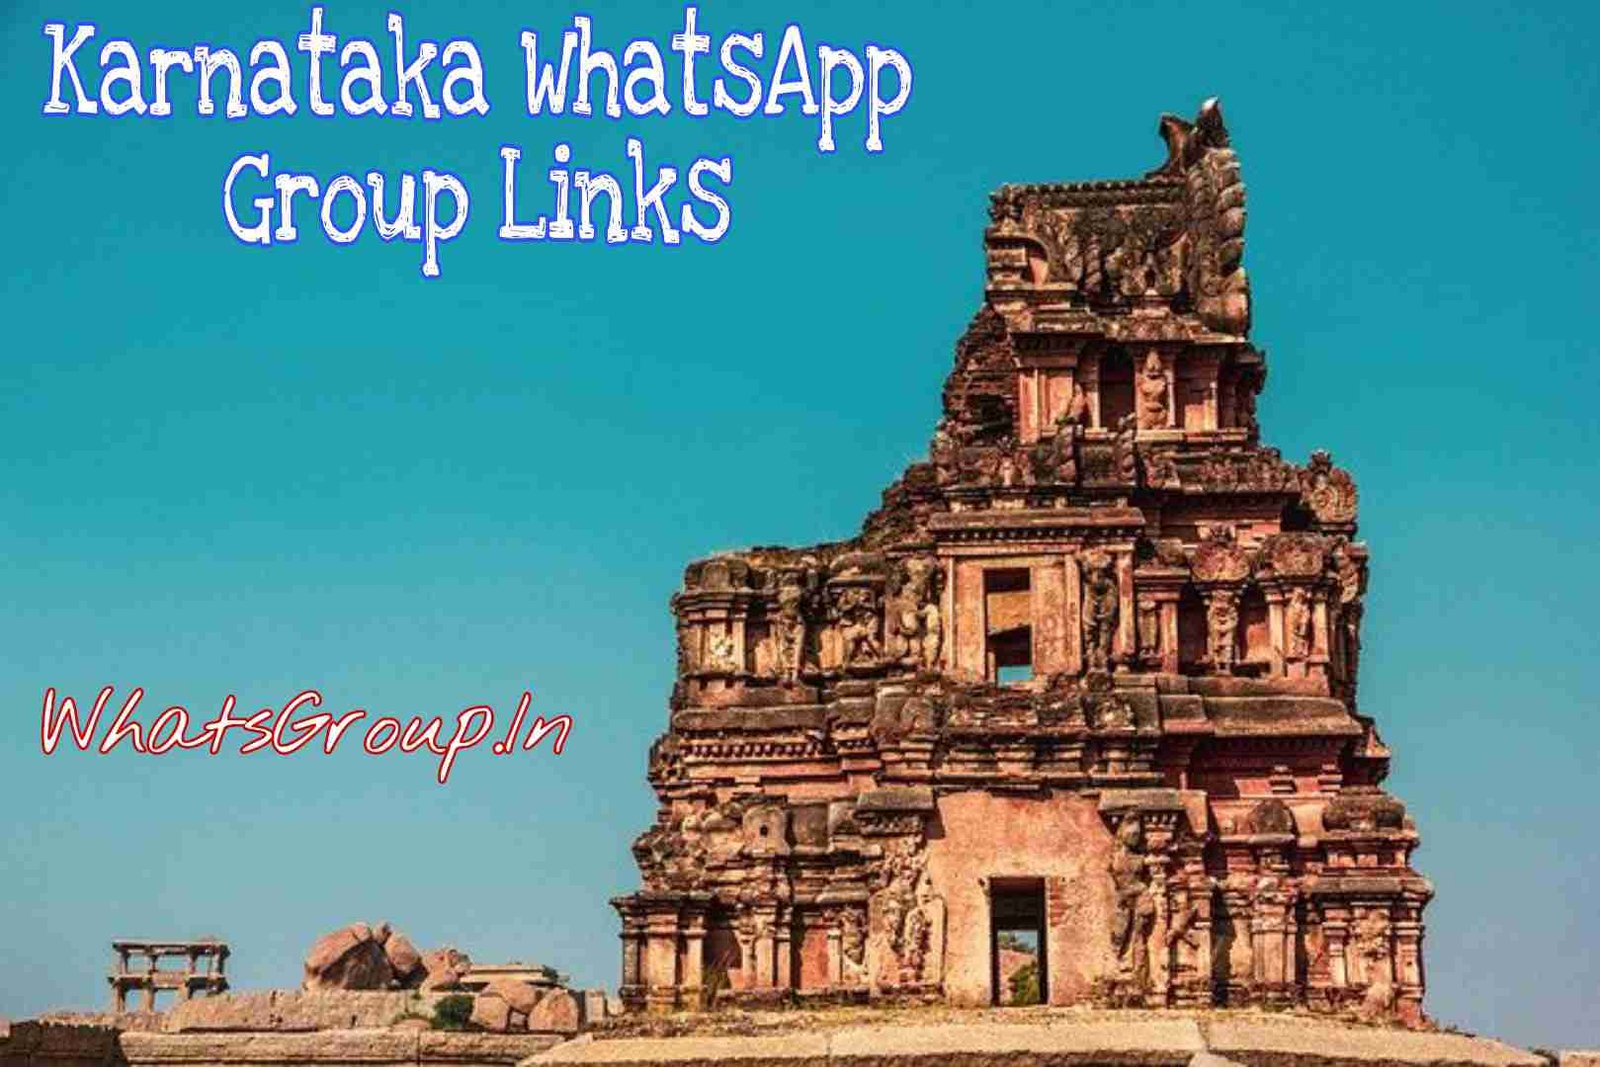 Karnataka WhatsApp Group Links